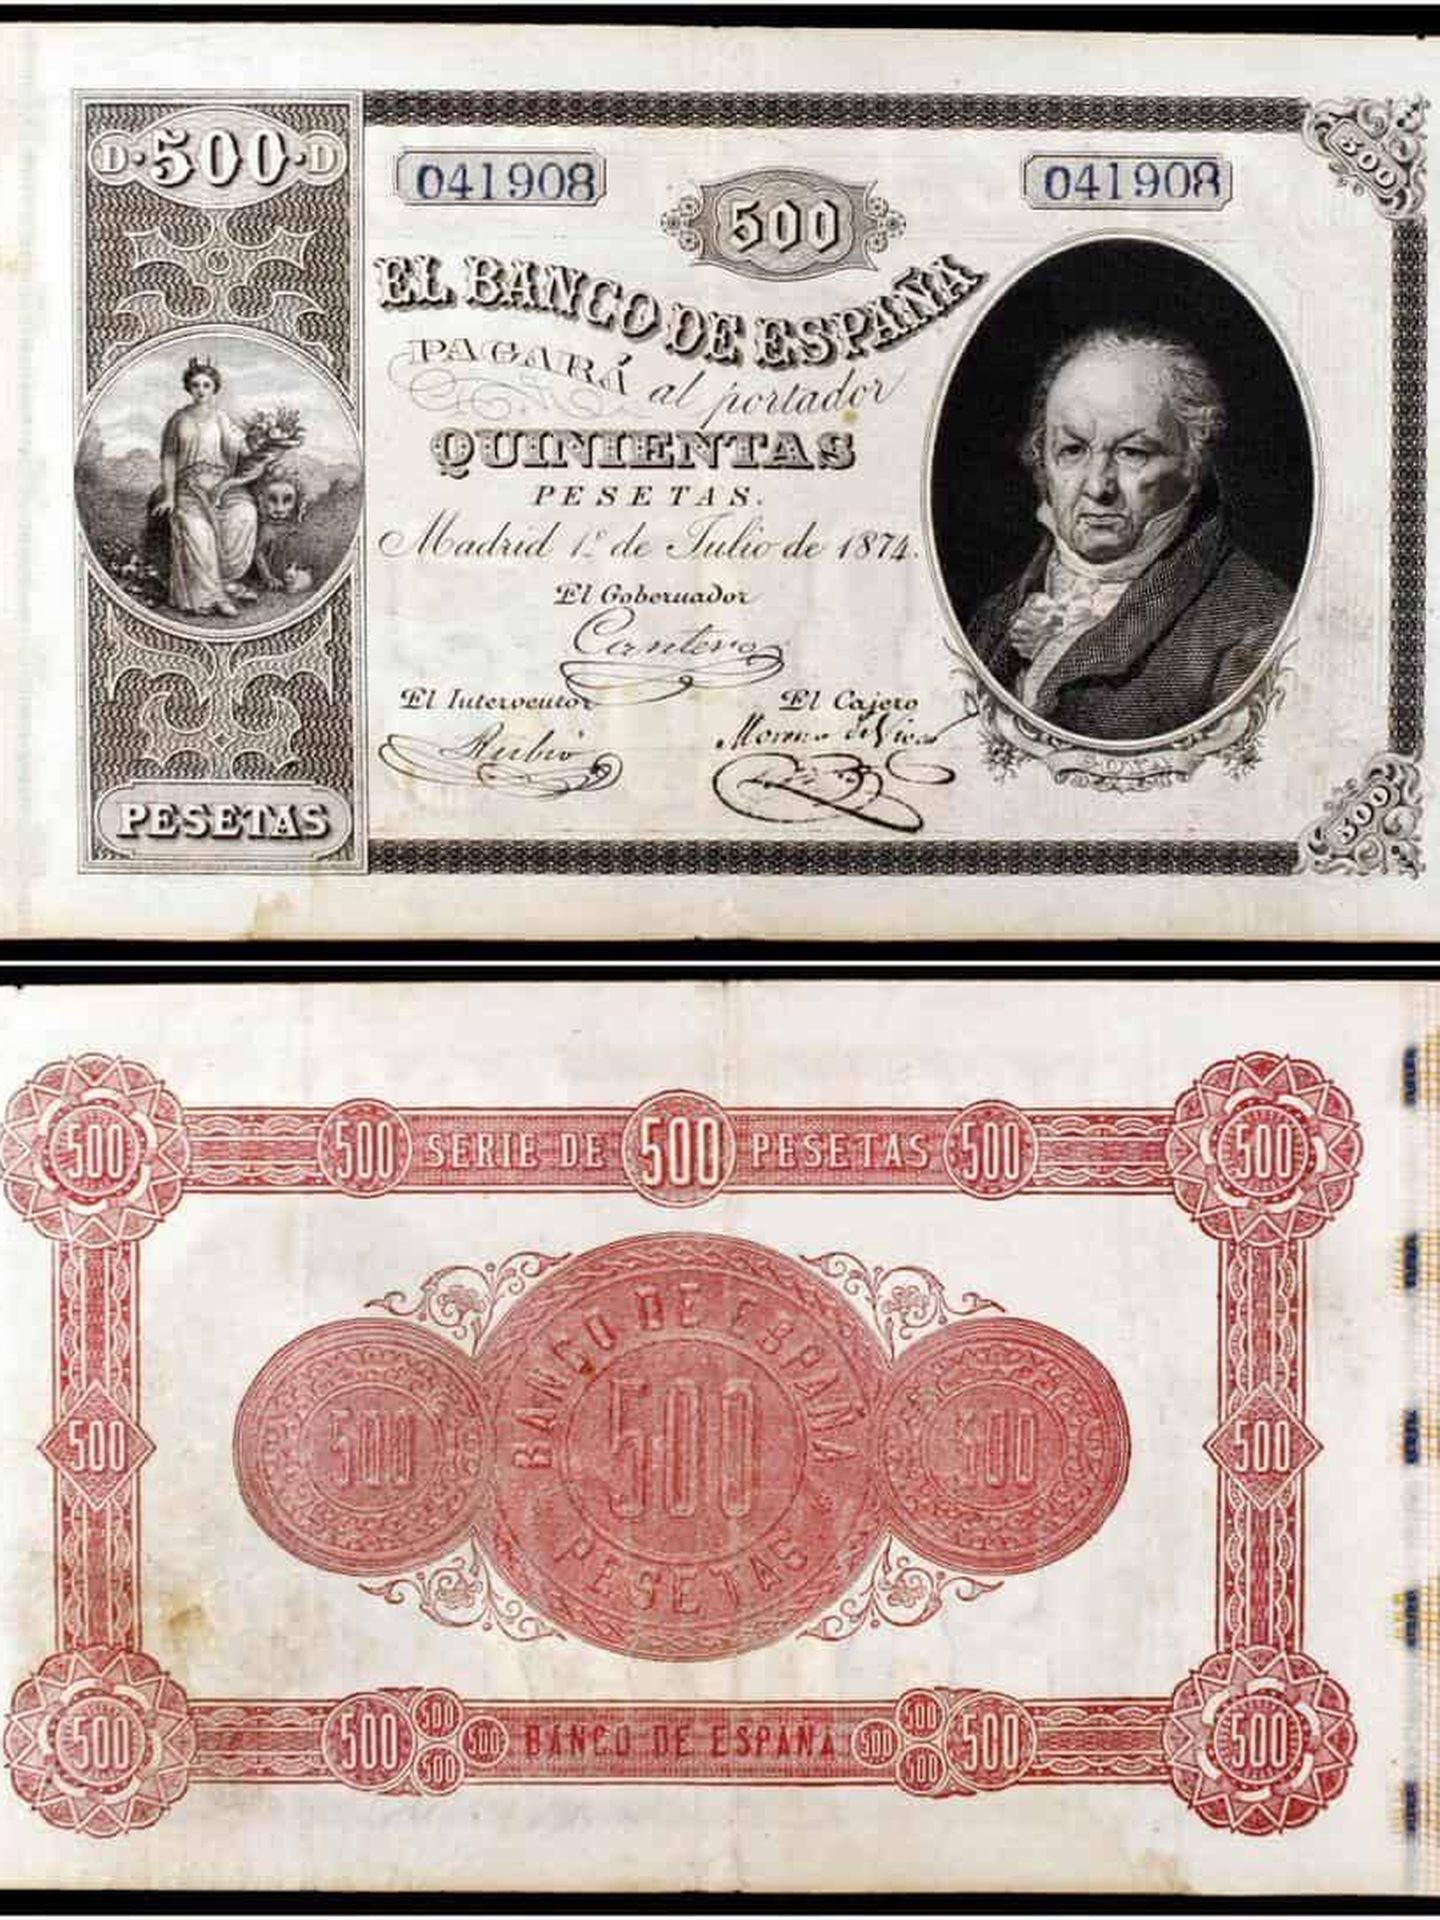 El billete de 500 pesetas de 1874, con la imagen de Goya, es uno de los más valiosos (Imagen: blognumismatico.com)